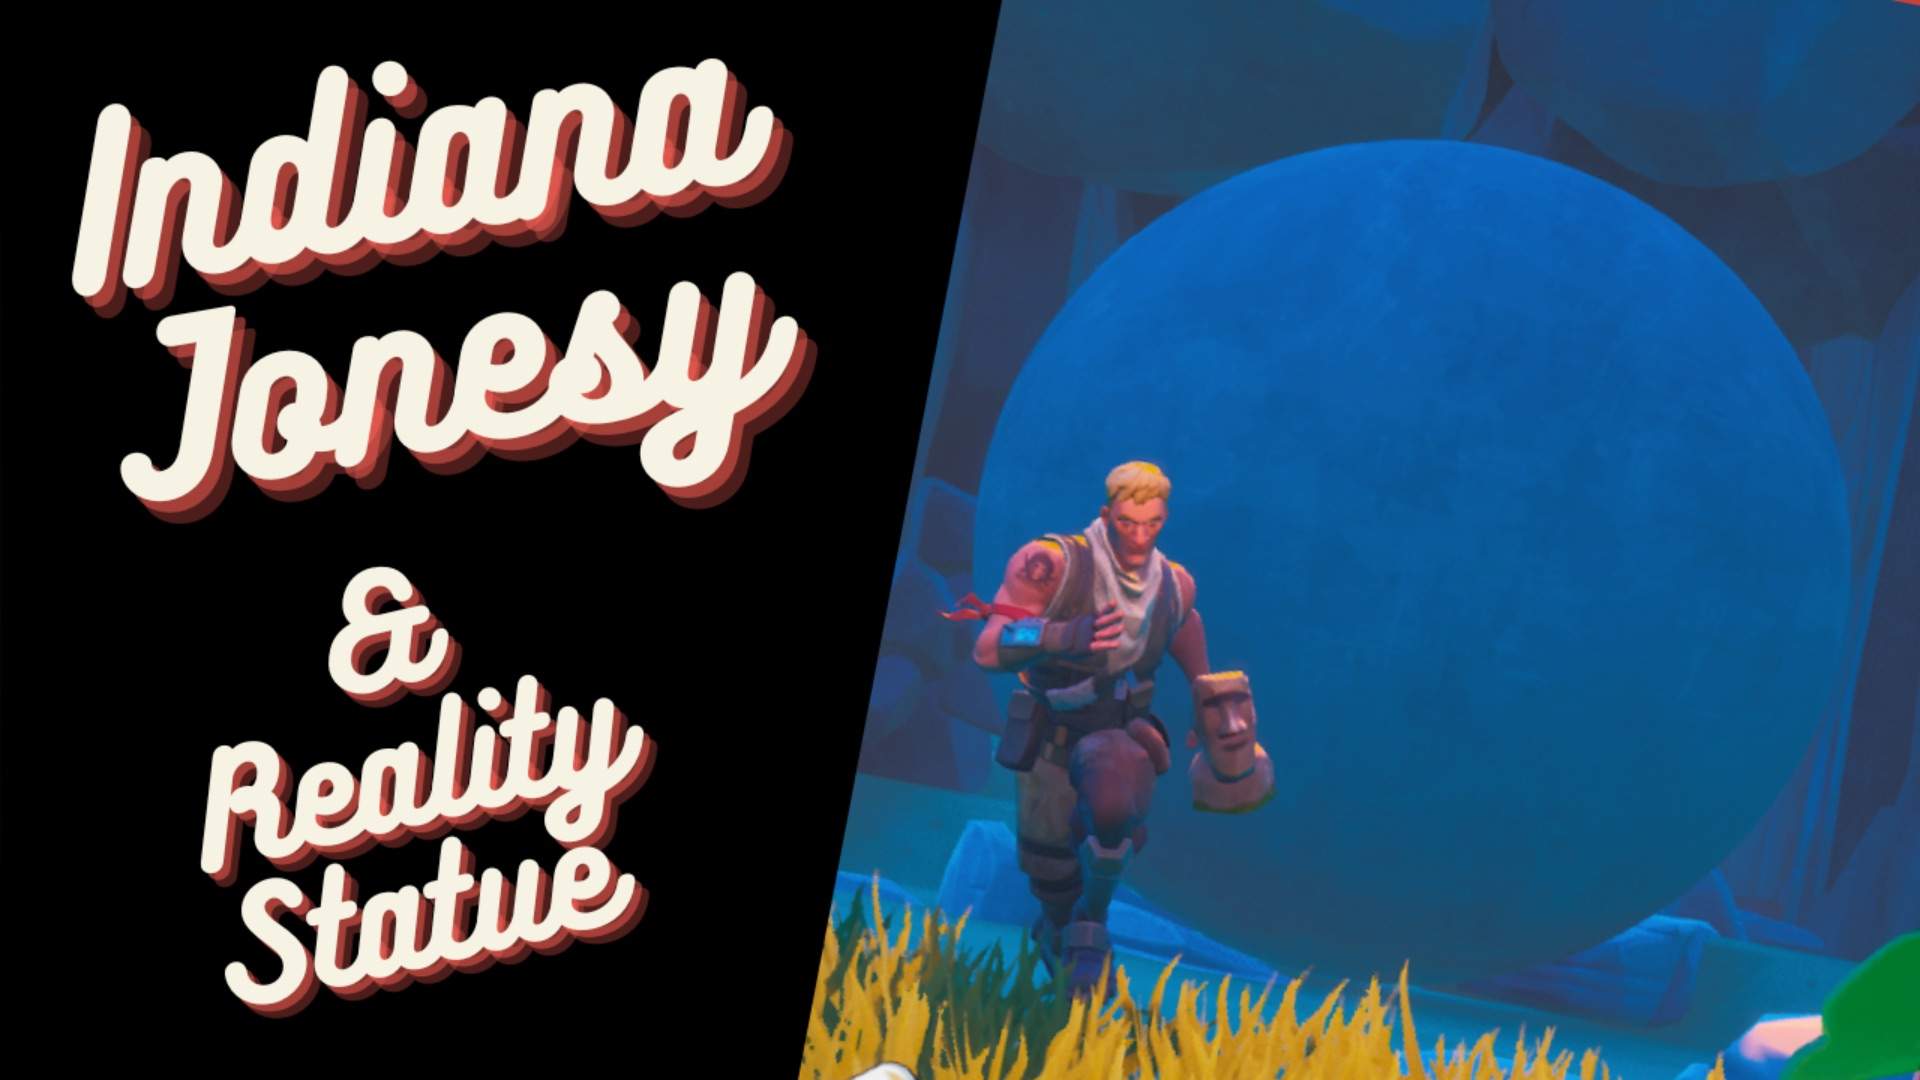 Indiana Jonesy & The Reality Statue